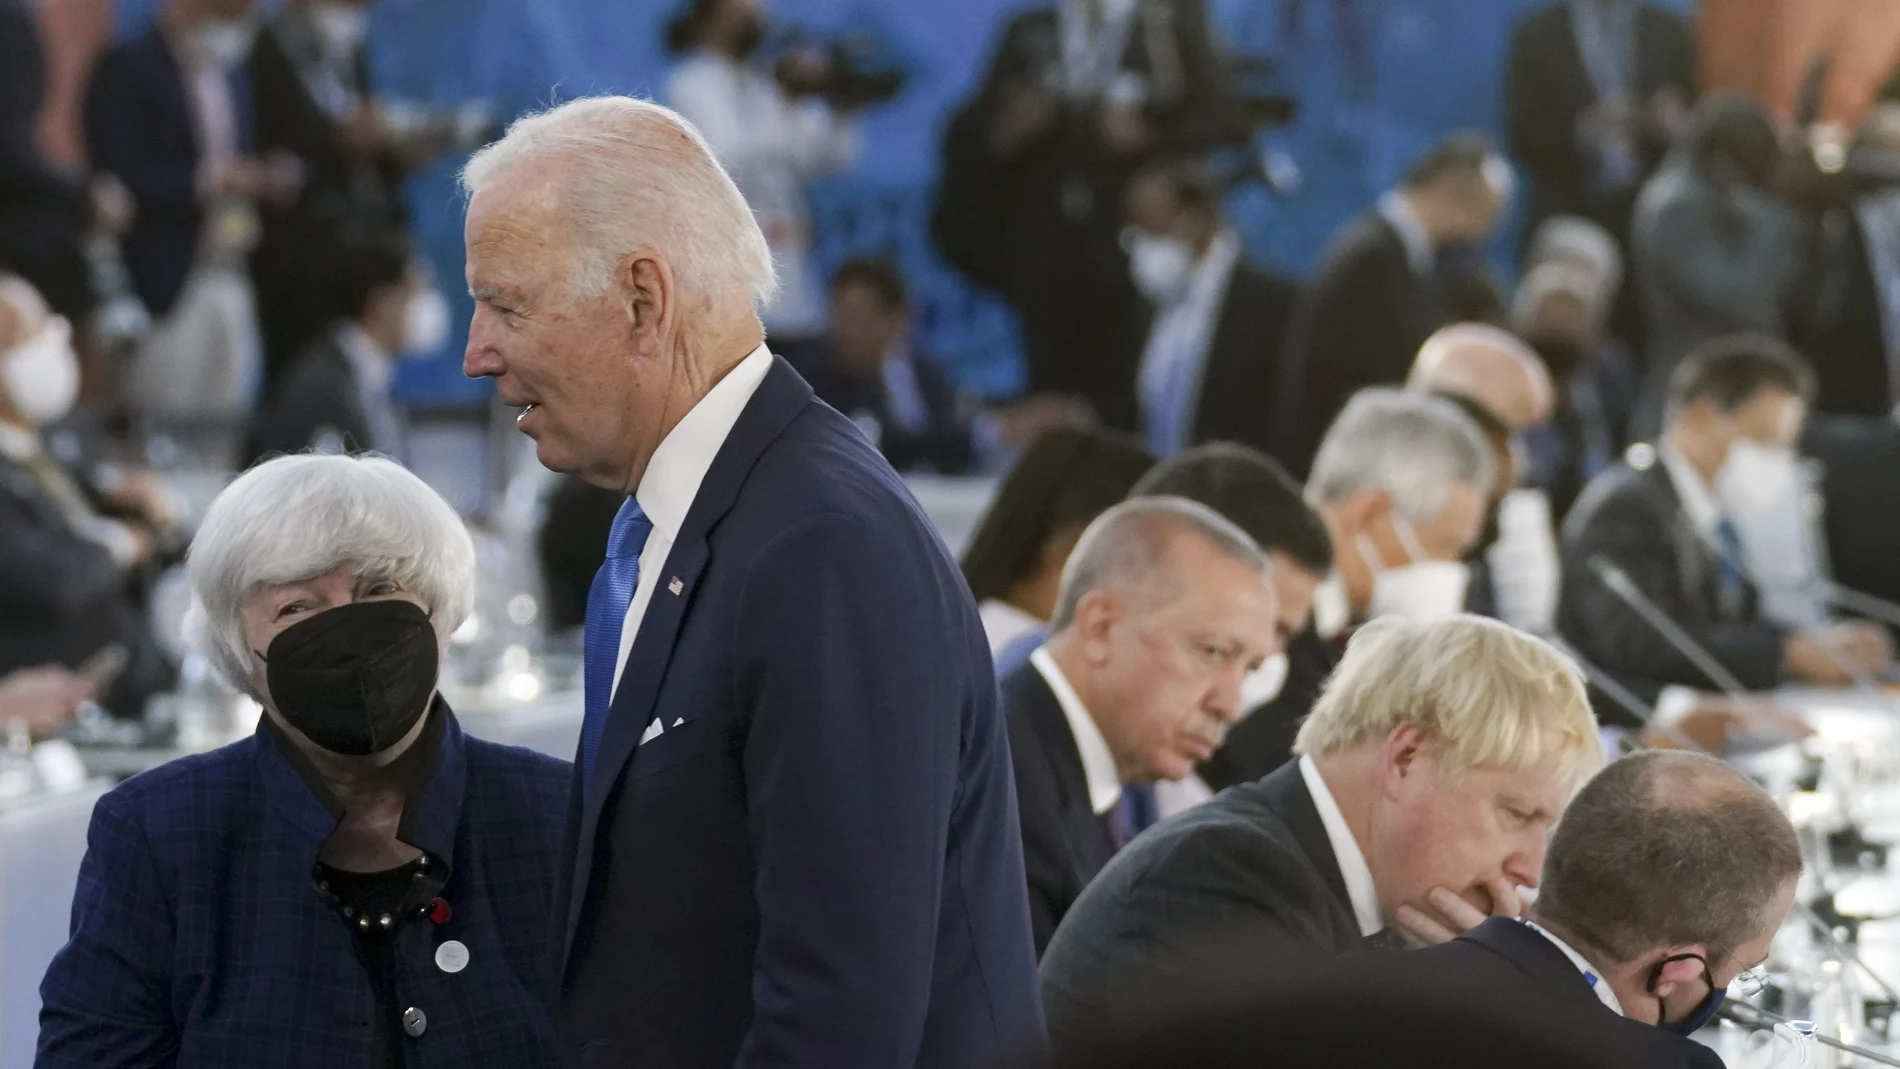 Joe Biden, presidente de Estados Unidos, avanzó hoy su voluntad de volver al acuerdo nuclear con Irán siempre que Teherán lo respete